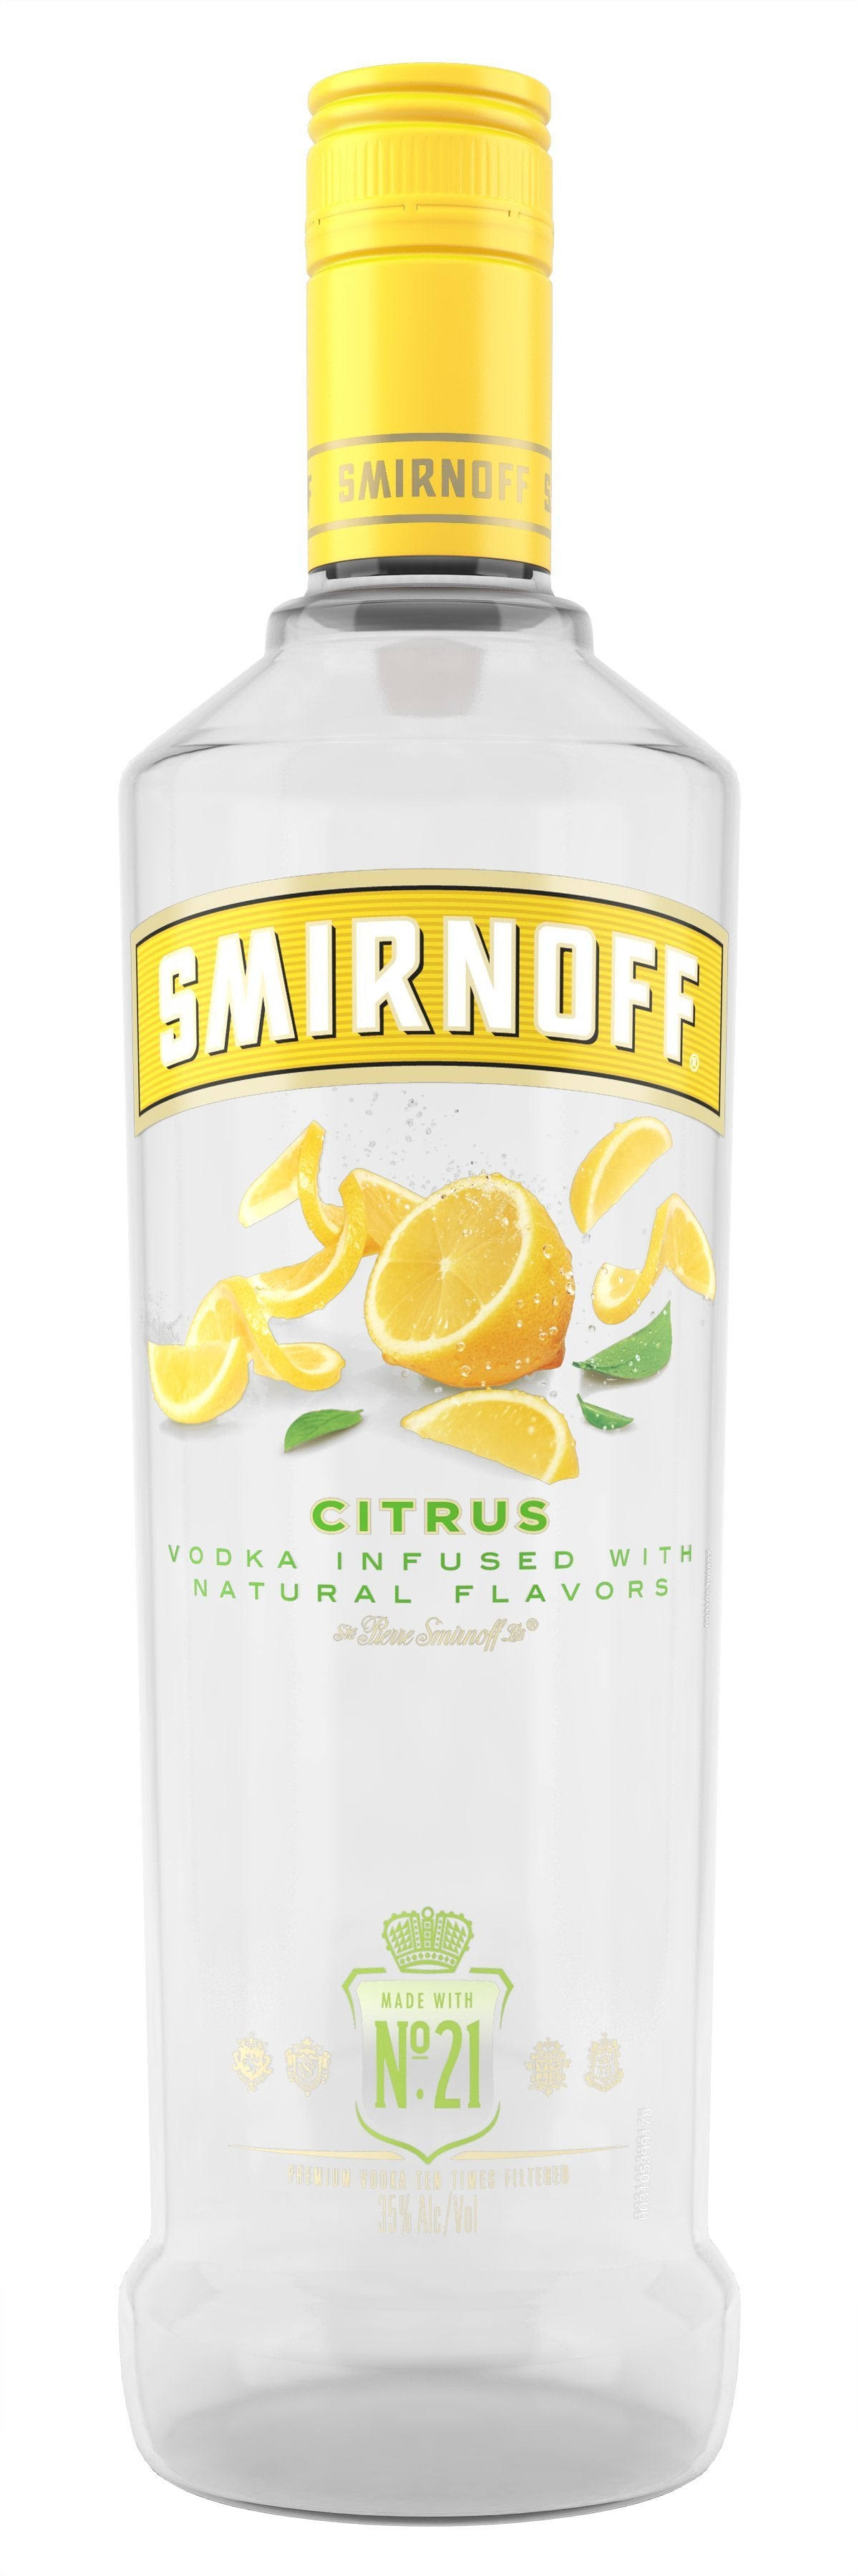 Smirnoff Vodka, Citrus - 750 ml